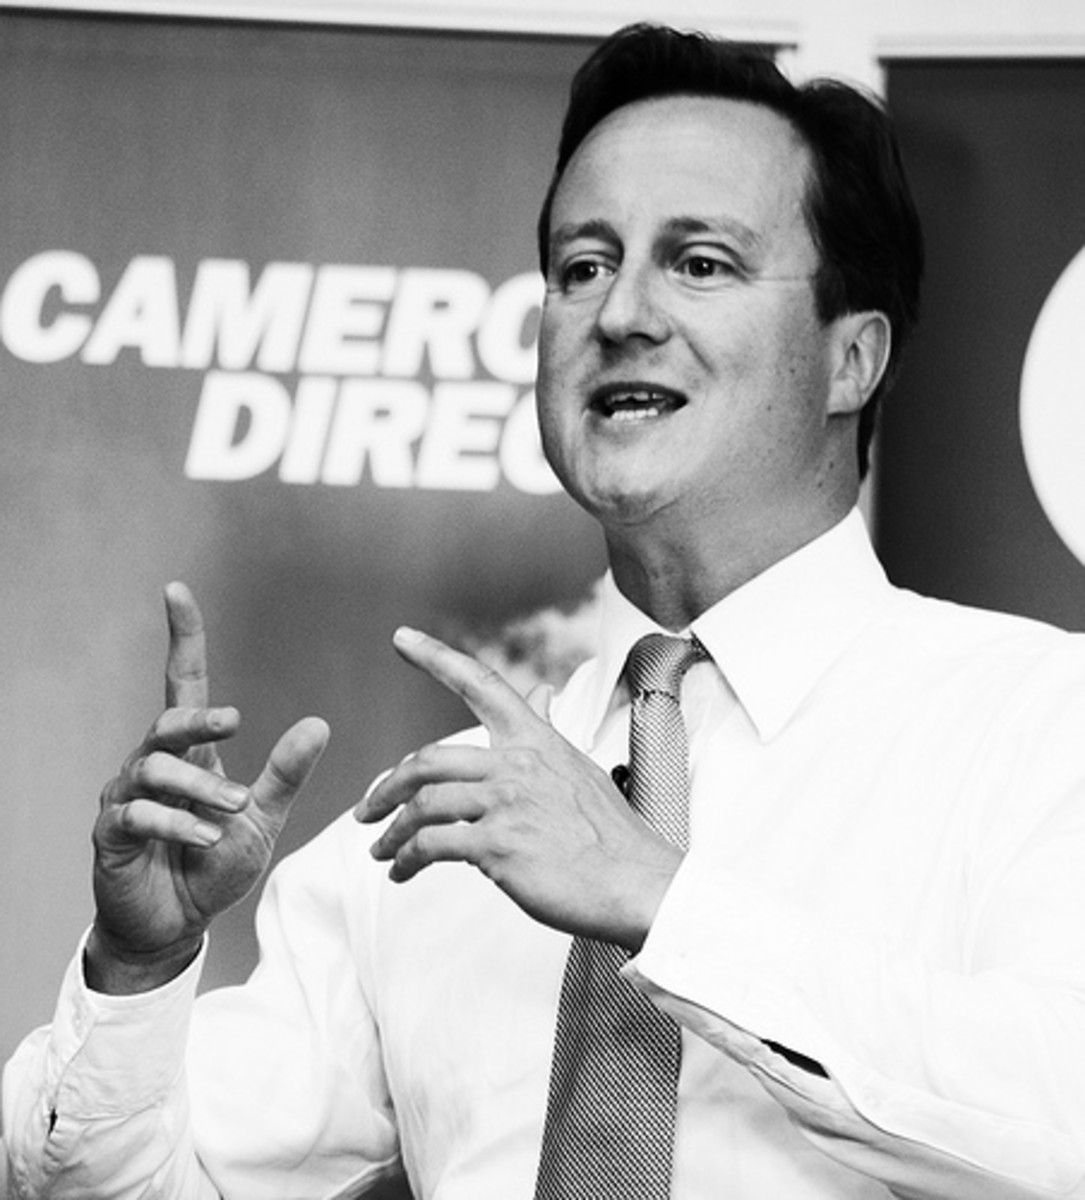 David Cameron mono by andrew moores.